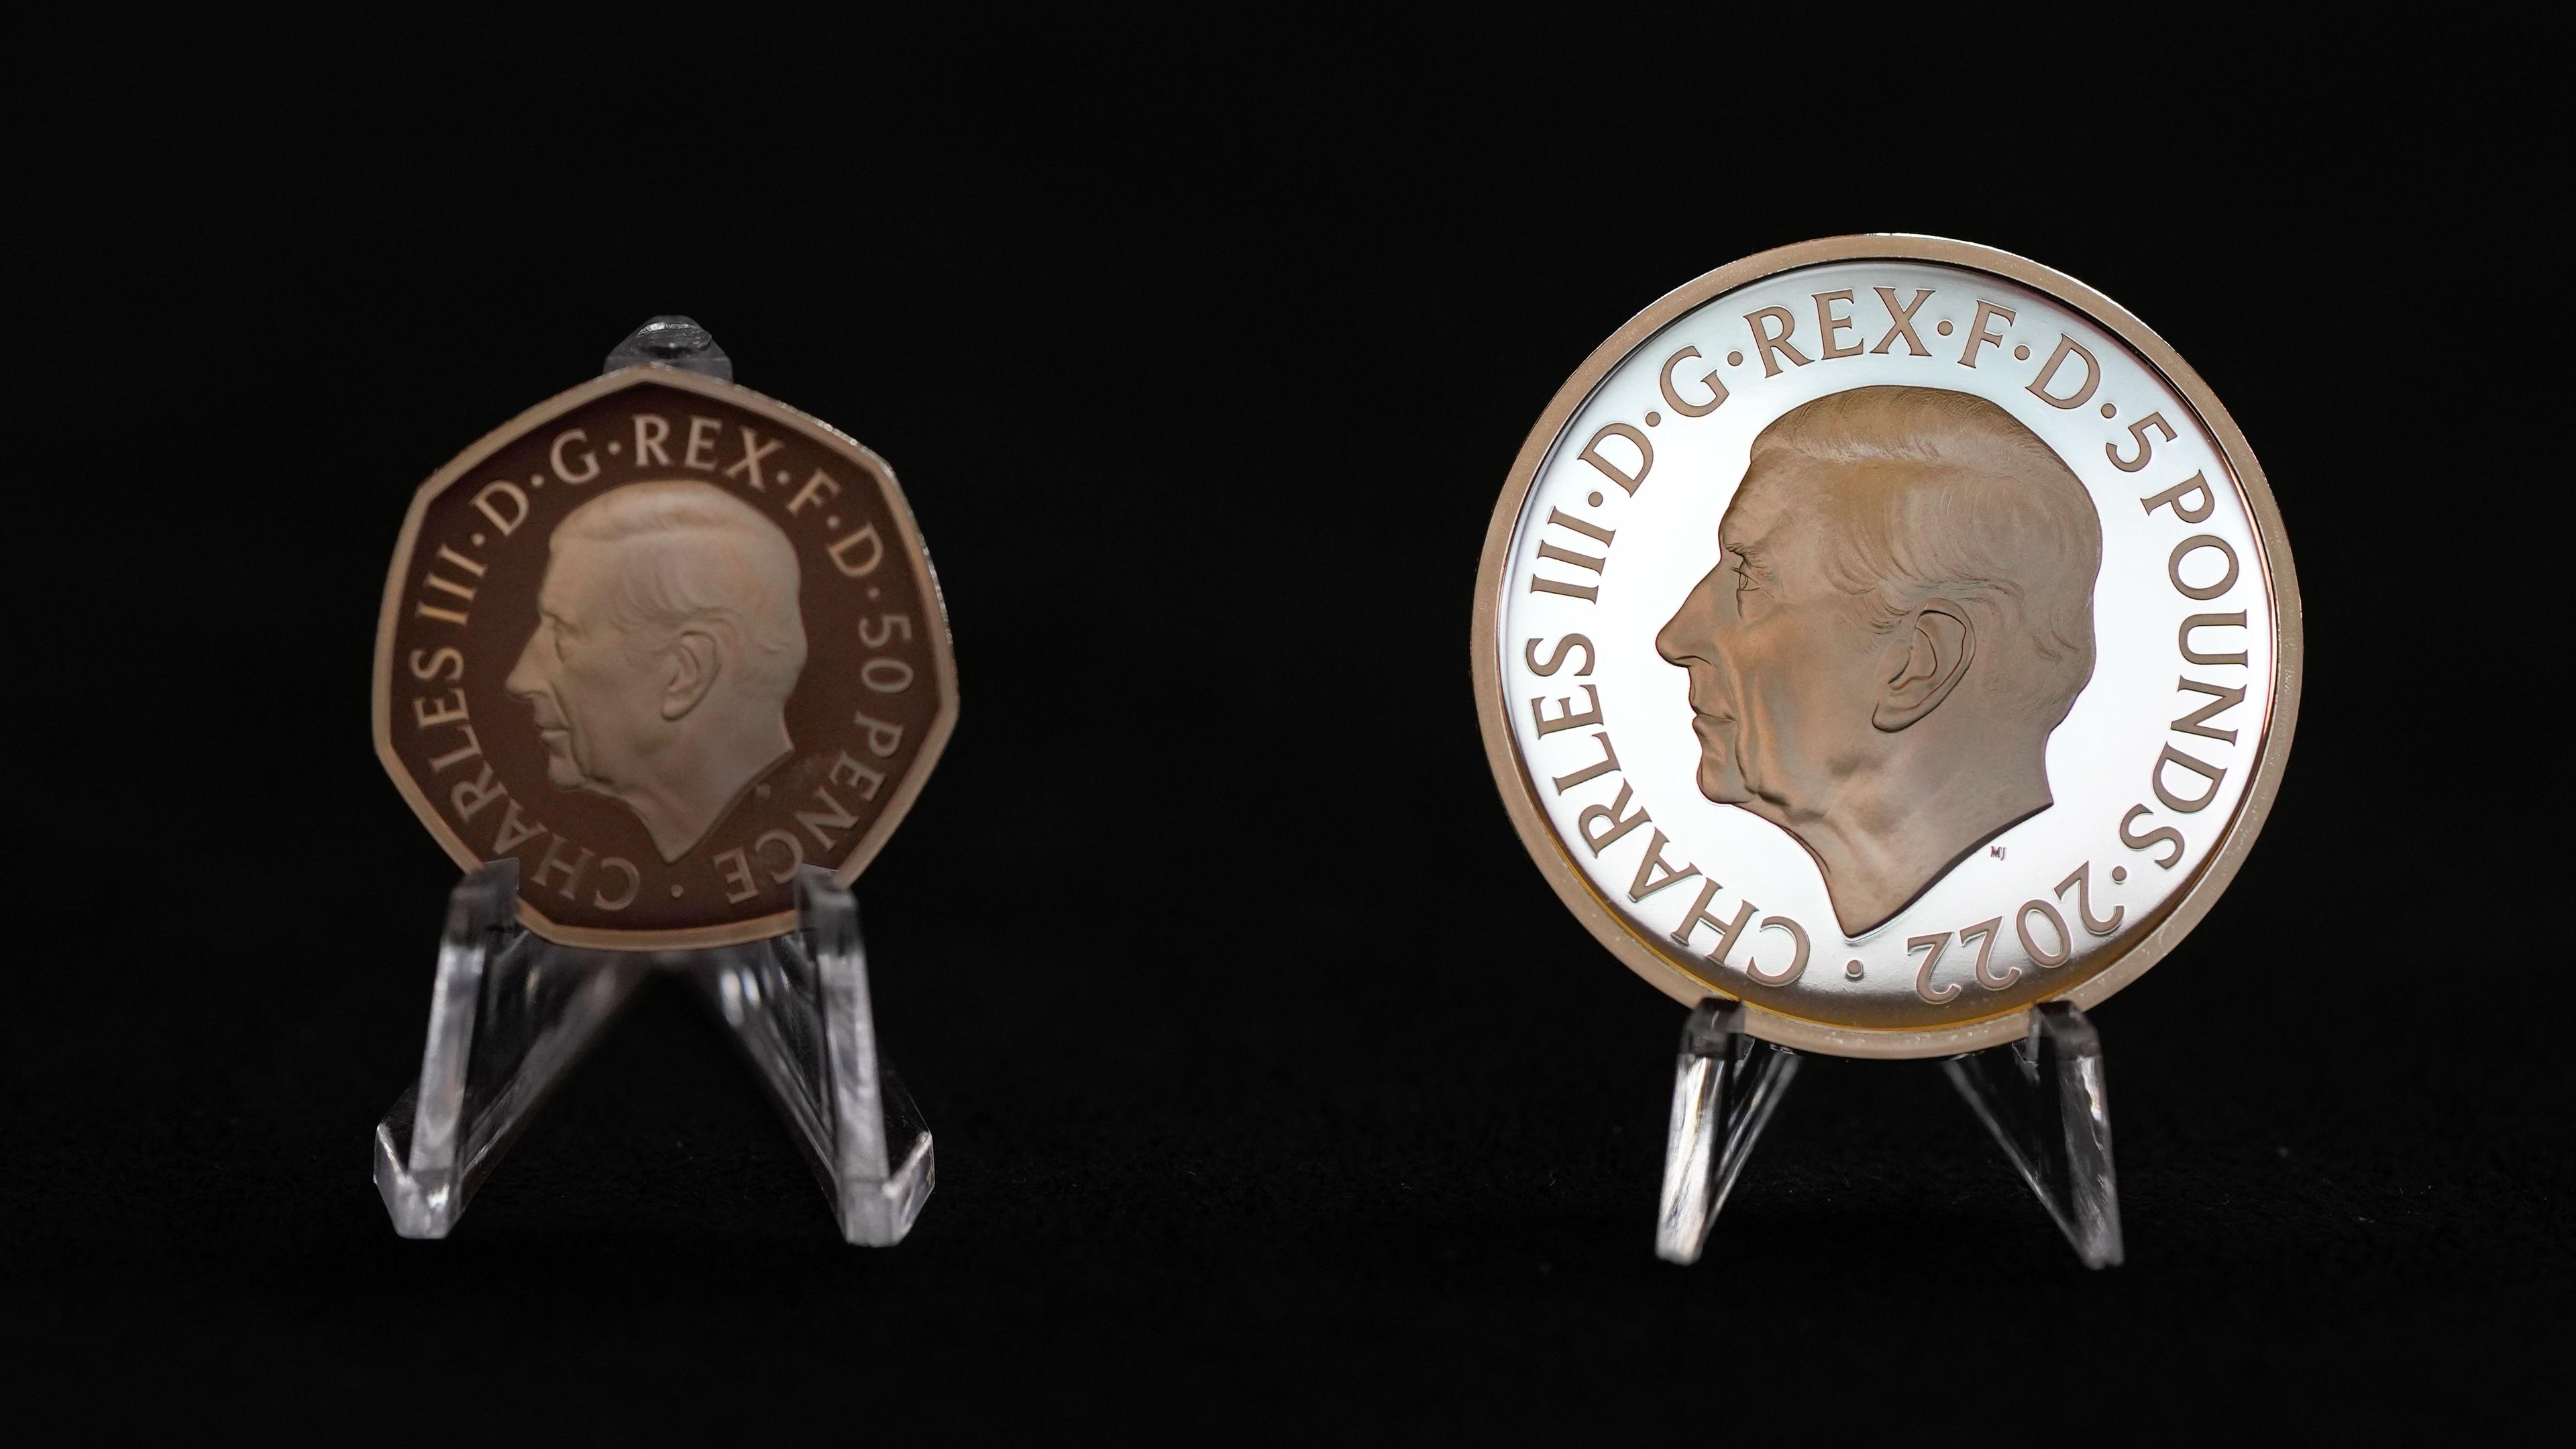 Großbritannien, London: Zwei neue Münzen mit dem Konterfei von König Charles III - links die neue 50-Pence-Münze und rechts die neue 5-Pfund-Gedenkmünze werden während einer Pressevorschau gezeigt.